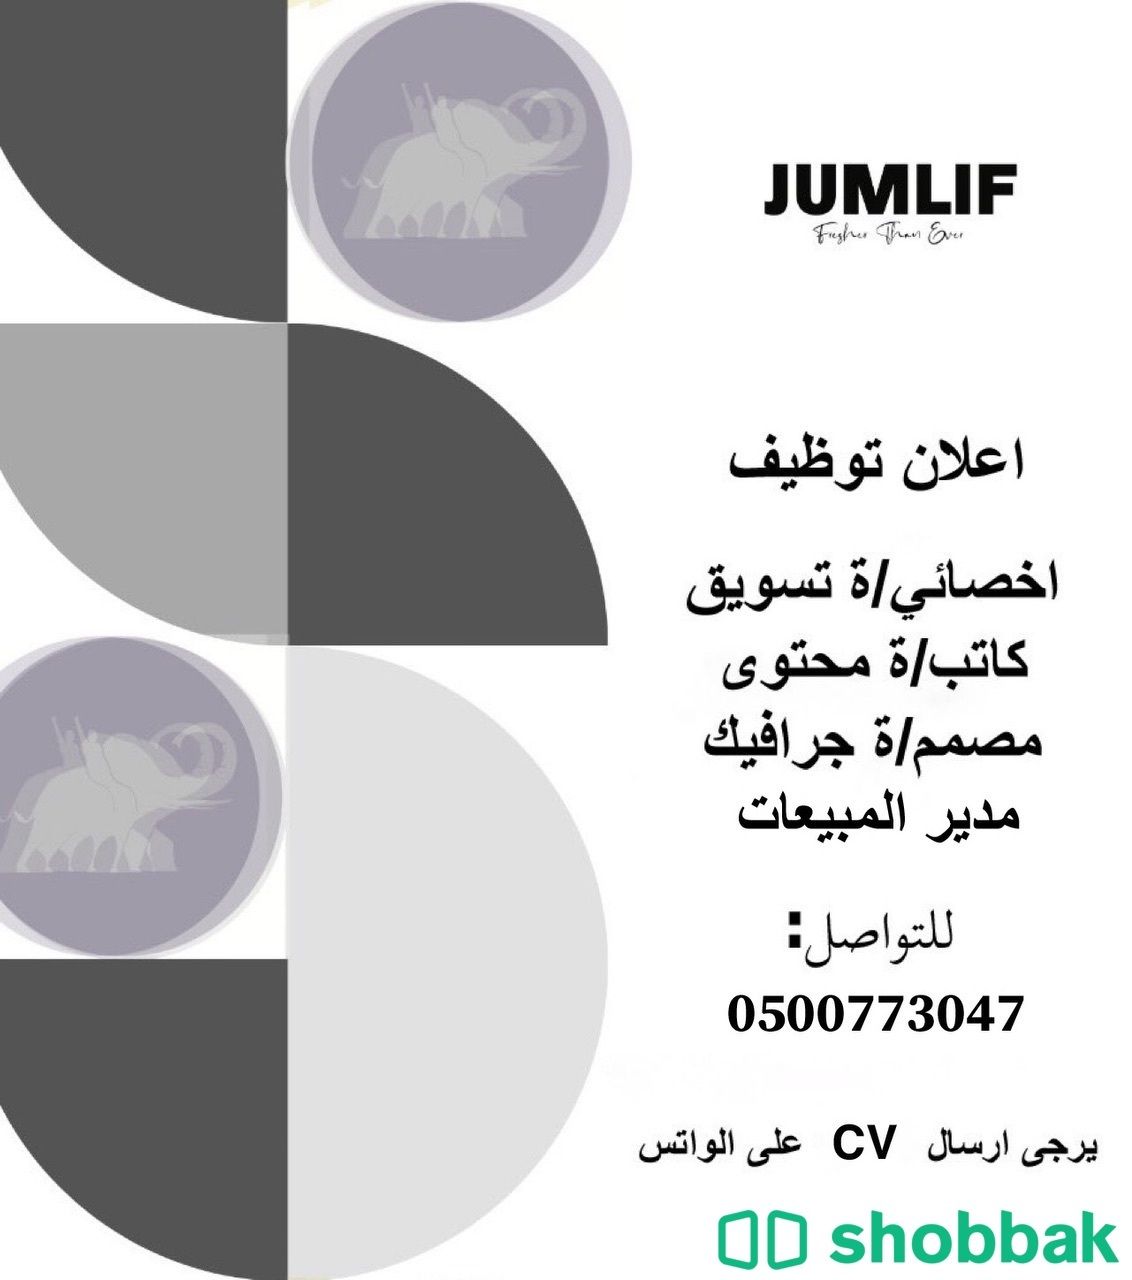 مطلوب موظفين لشركه jumlif للملابس Shobbak Saudi Arabia